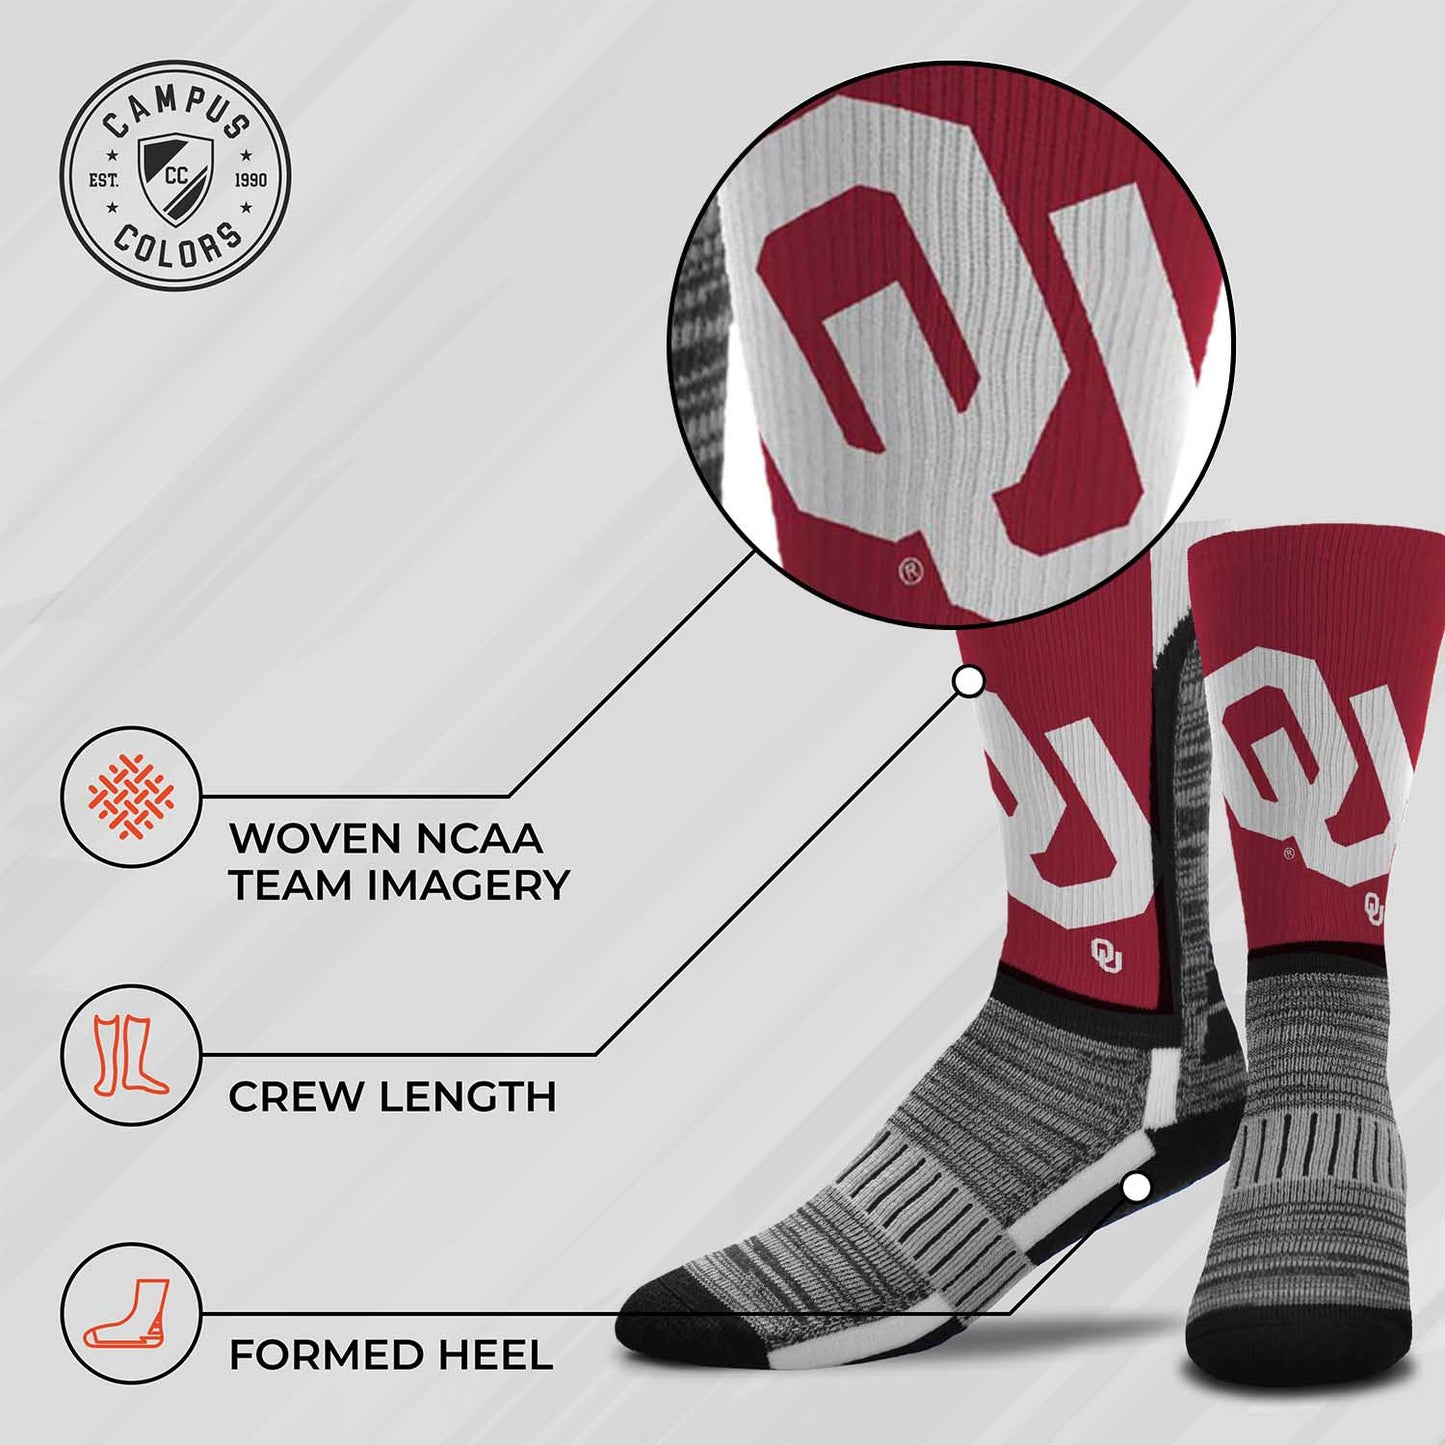 Oklahoma Sooners NCAA Adult State and University Crew Socks - Crimson